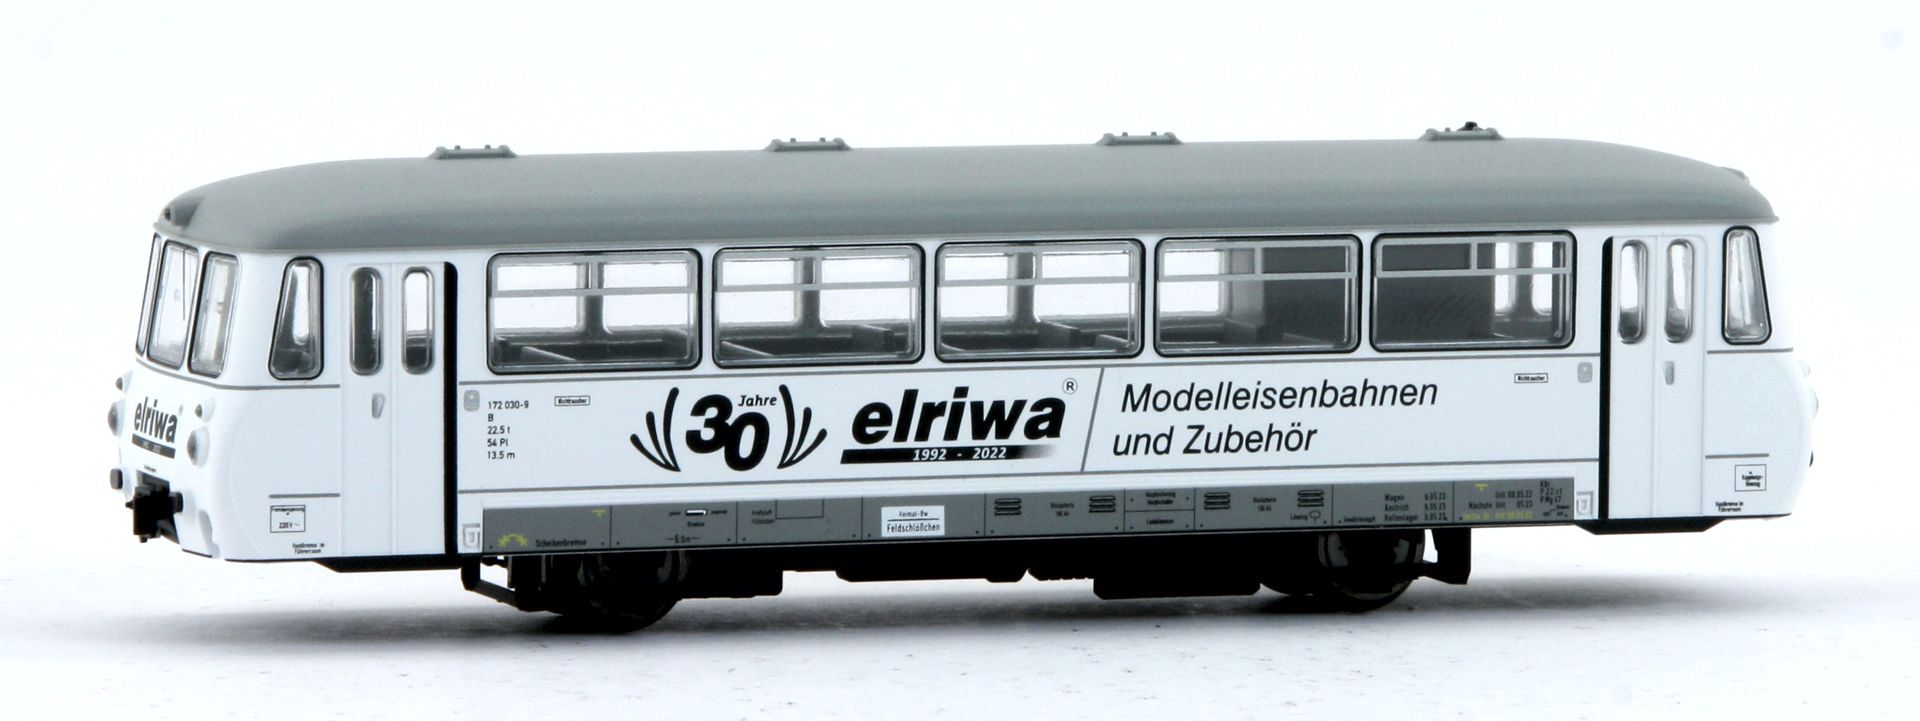 Kres 55043100 - Simson S50 weiß und S51 schwarz, Fertigmodelle -  Sonderauflage '30 Jahre elriwa